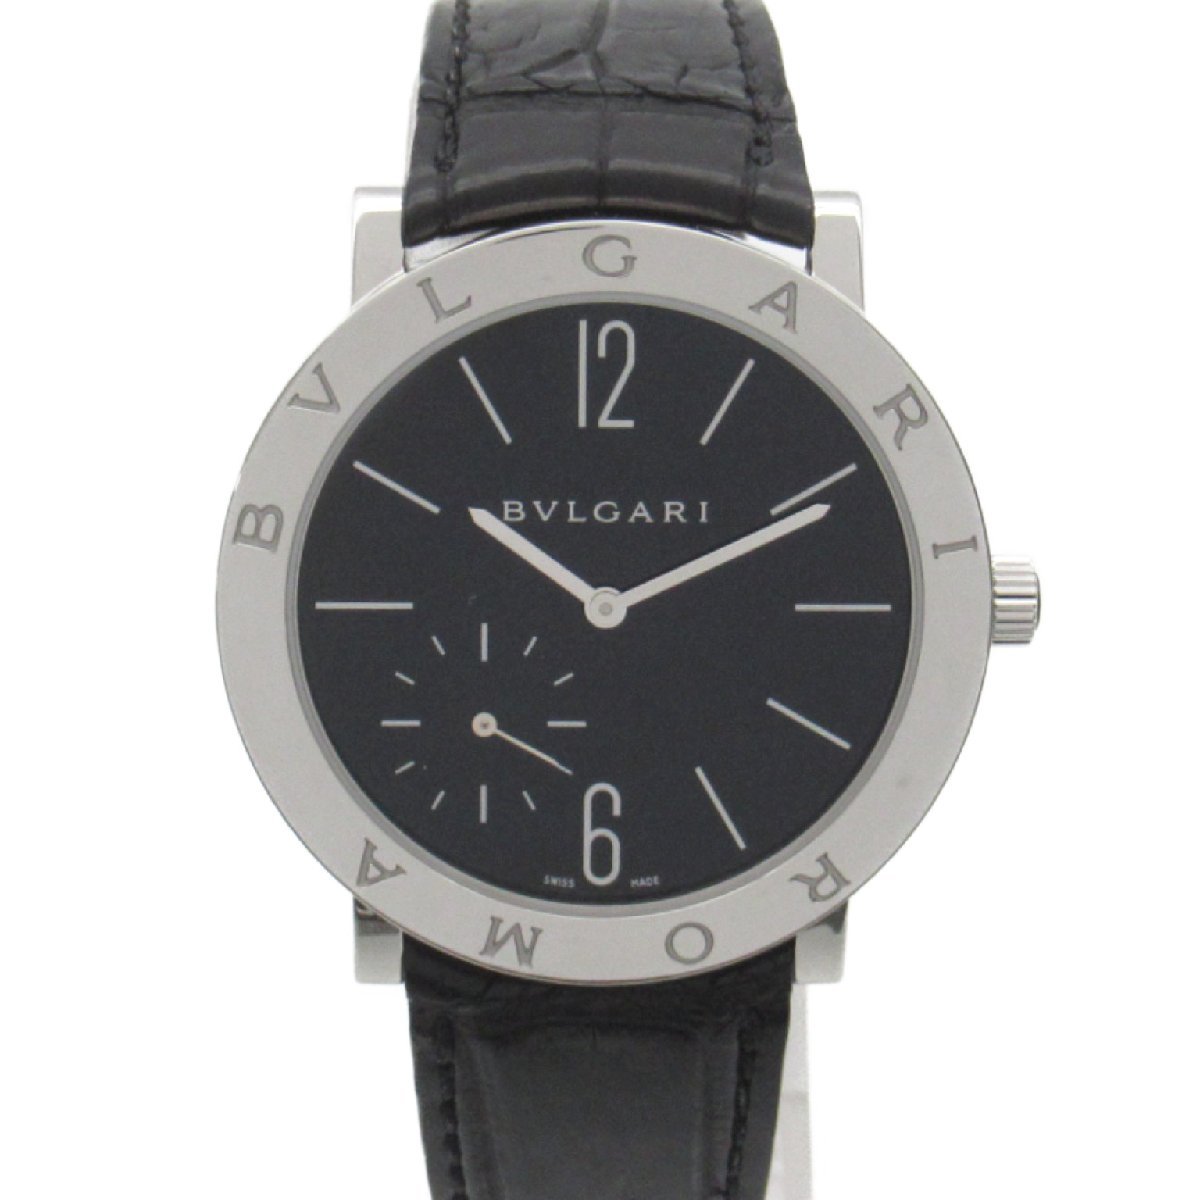 BVLGARI ブルガリ 腕時計 ローマフィニッシモ 腕時計 ウォッチ ブラック系 ステンレススチール レザーベルト クロコダイル 中古 メンズ